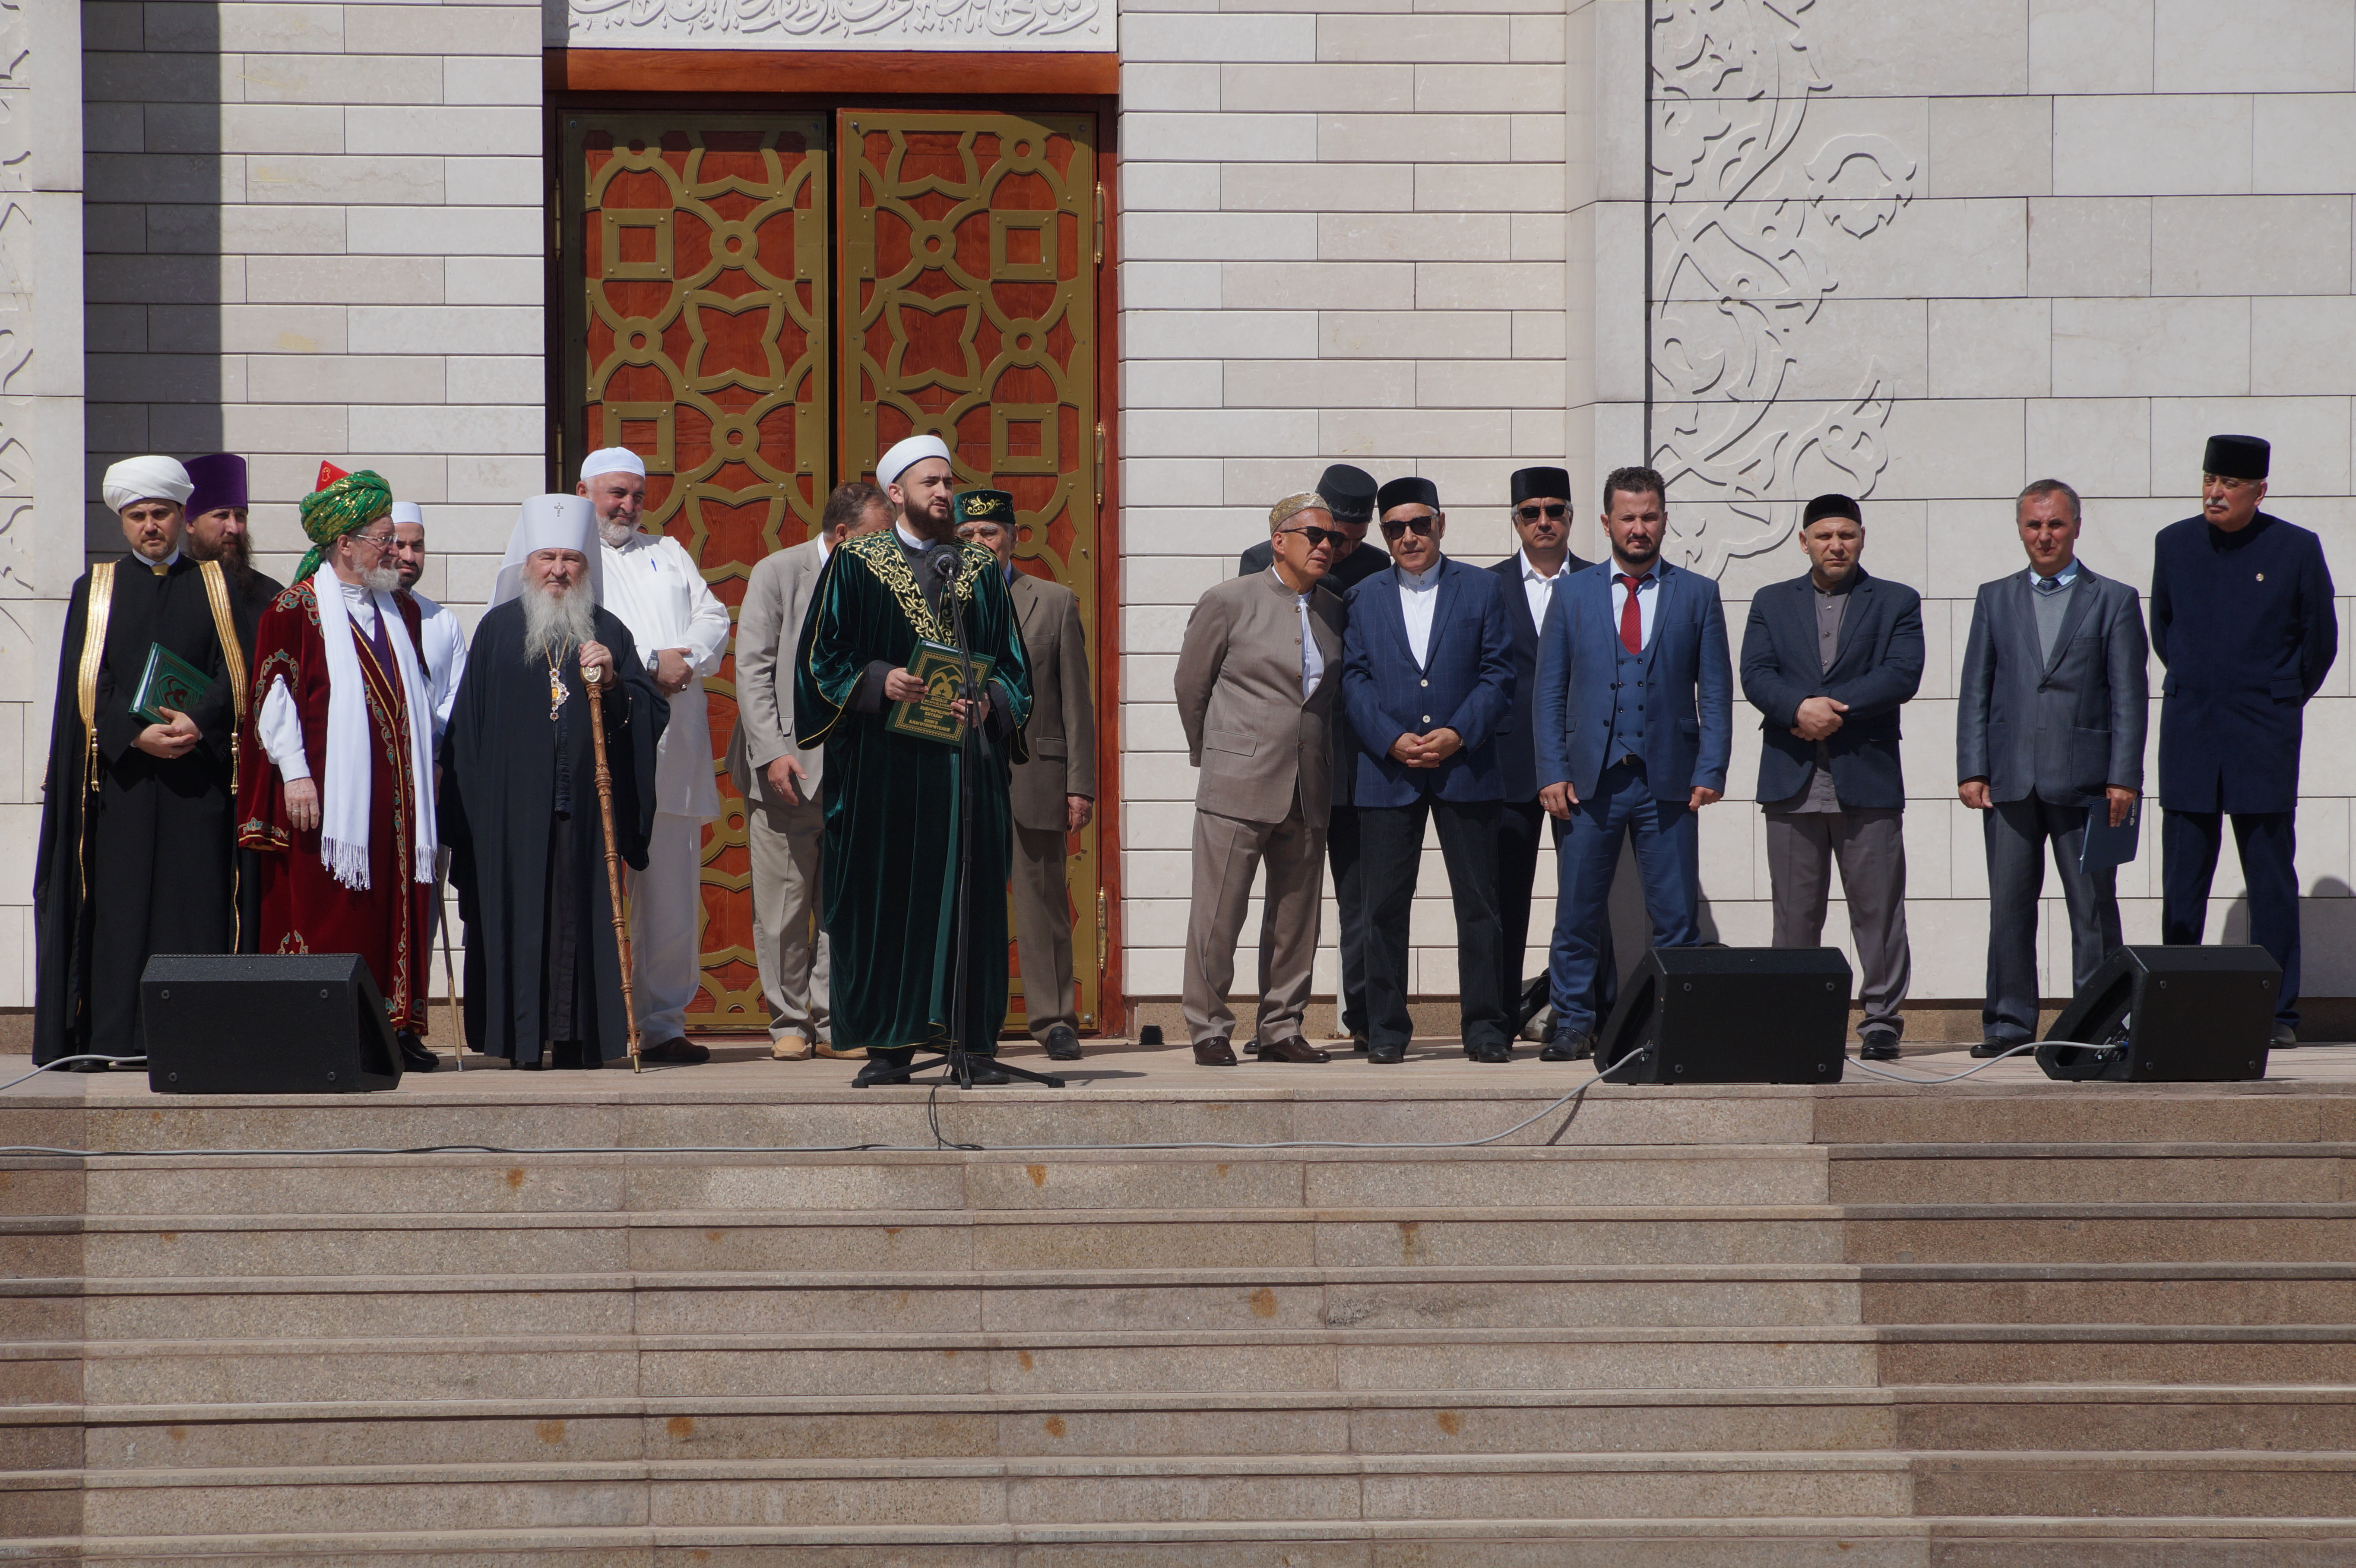 Мусульмане отметили дату официального принятия ислама в Волжской Булгарии традиционным Изге Болгар жыены